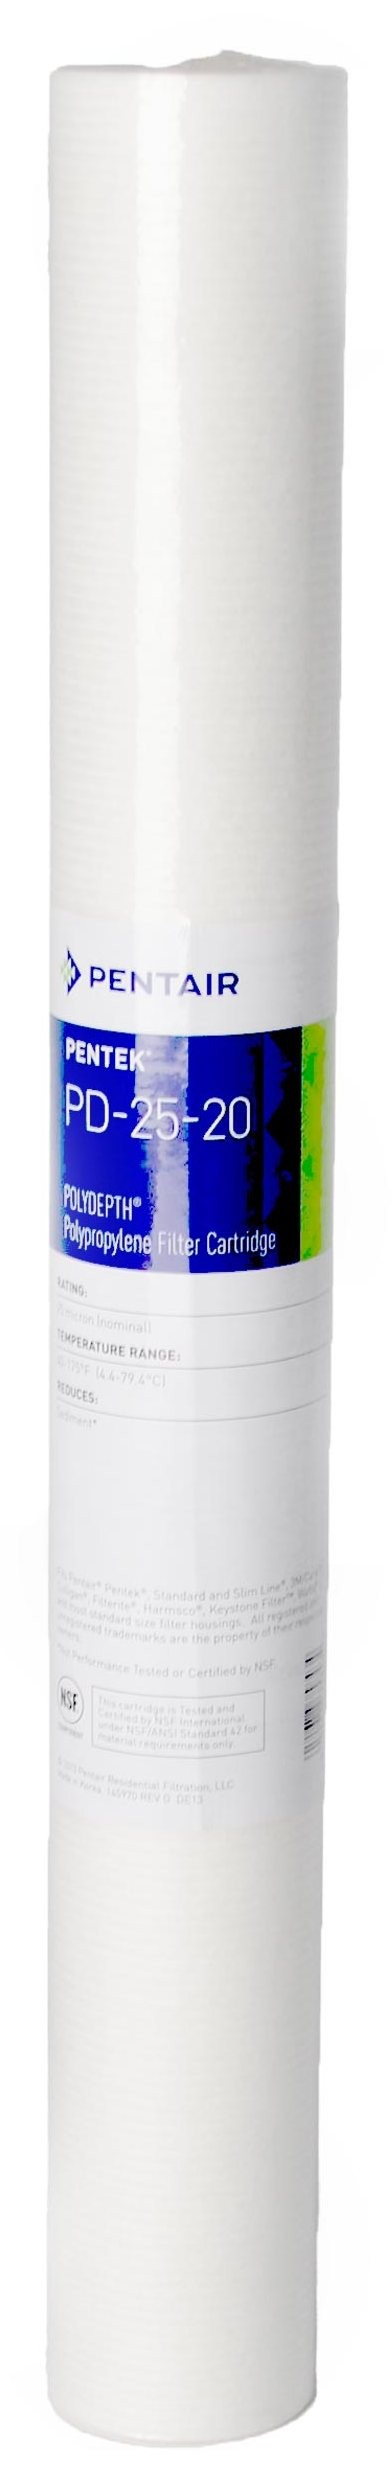 Картридж для фильтра Pentair PENTEK PD-25-20 POLYDEPTH 20sl' 25мкм (155758-43)